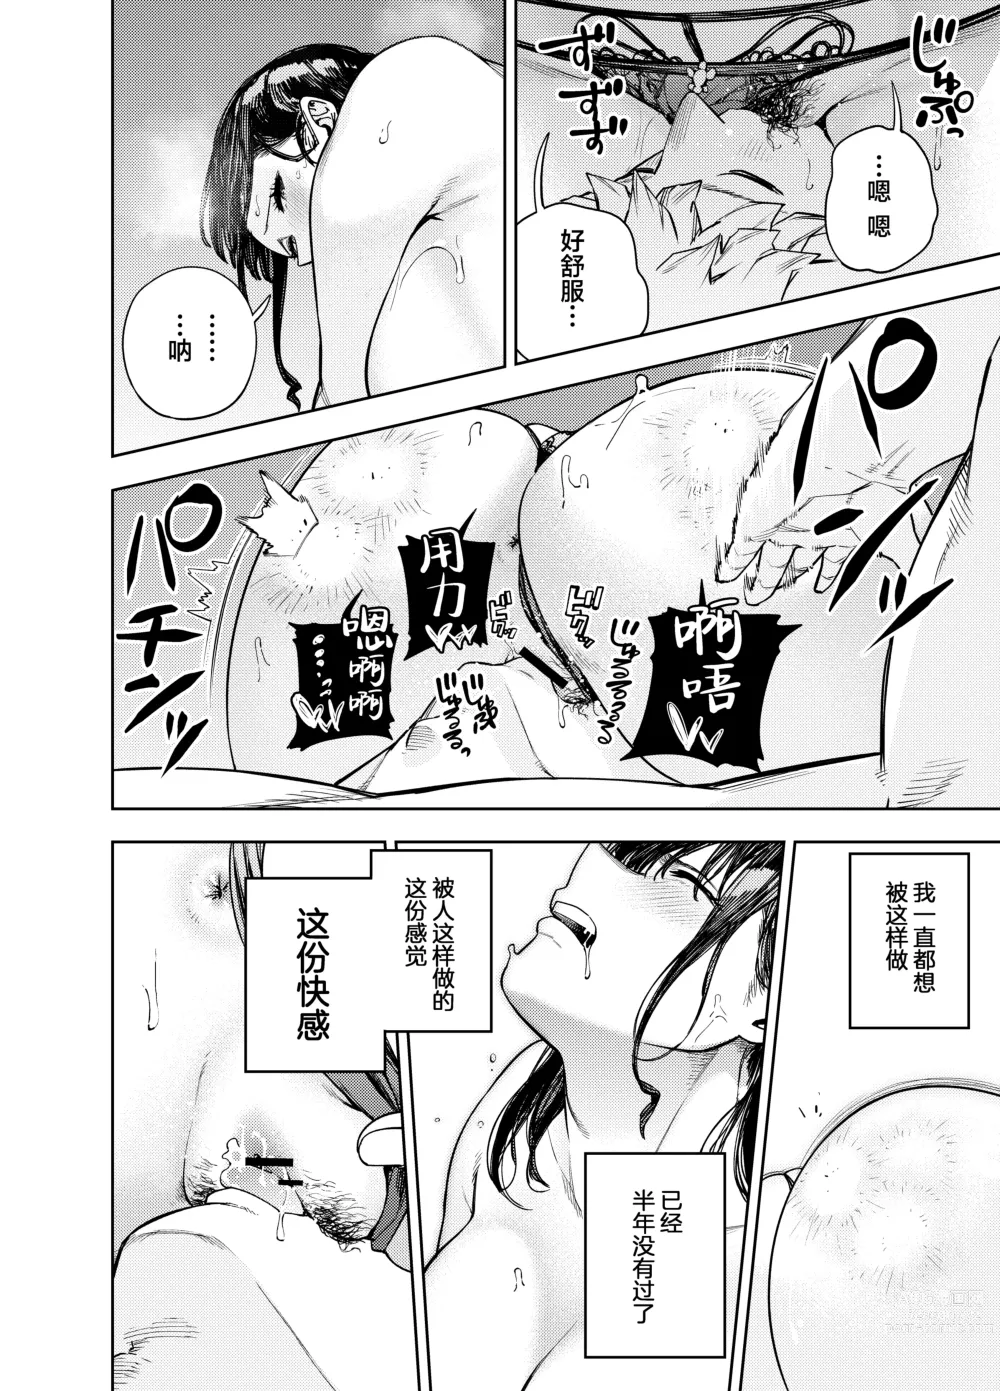 Page 27 of doujinshi Chounai Furin ~Yumi~